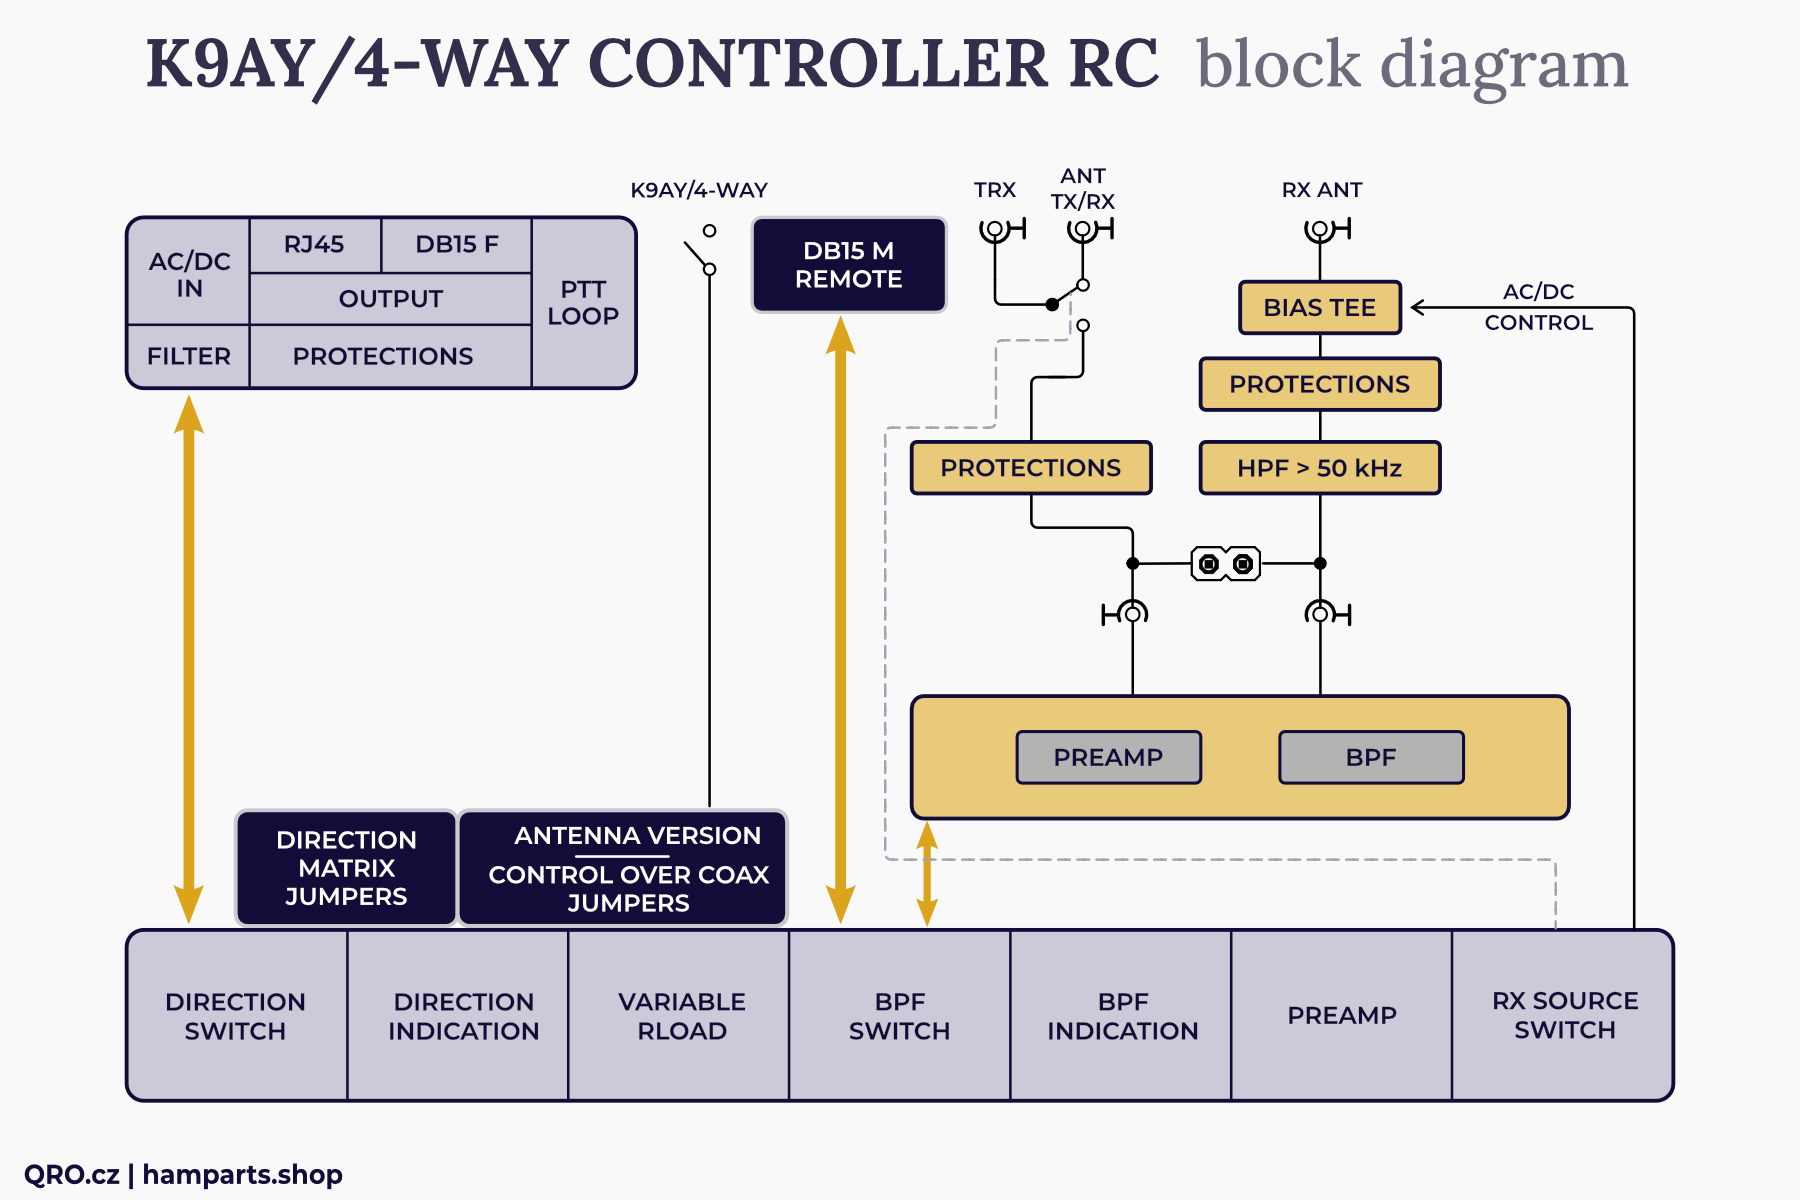 k9ay controller remote version block diagram by qro.cz hamparts.shop